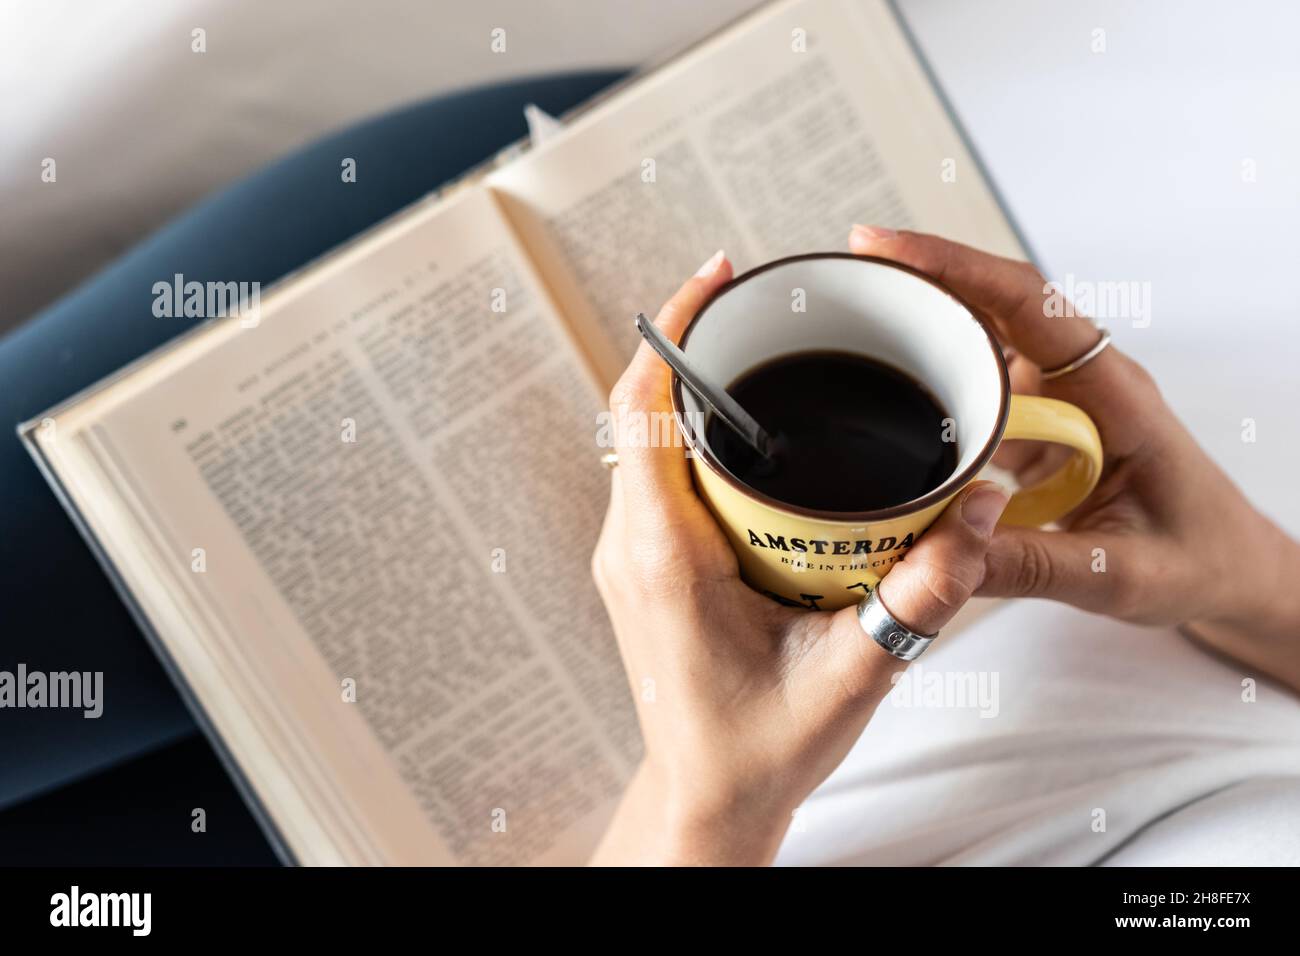 Détail des mains d'une fille couchée au lit avec une tasse de café dans ses mains et un livre Banque D'Images